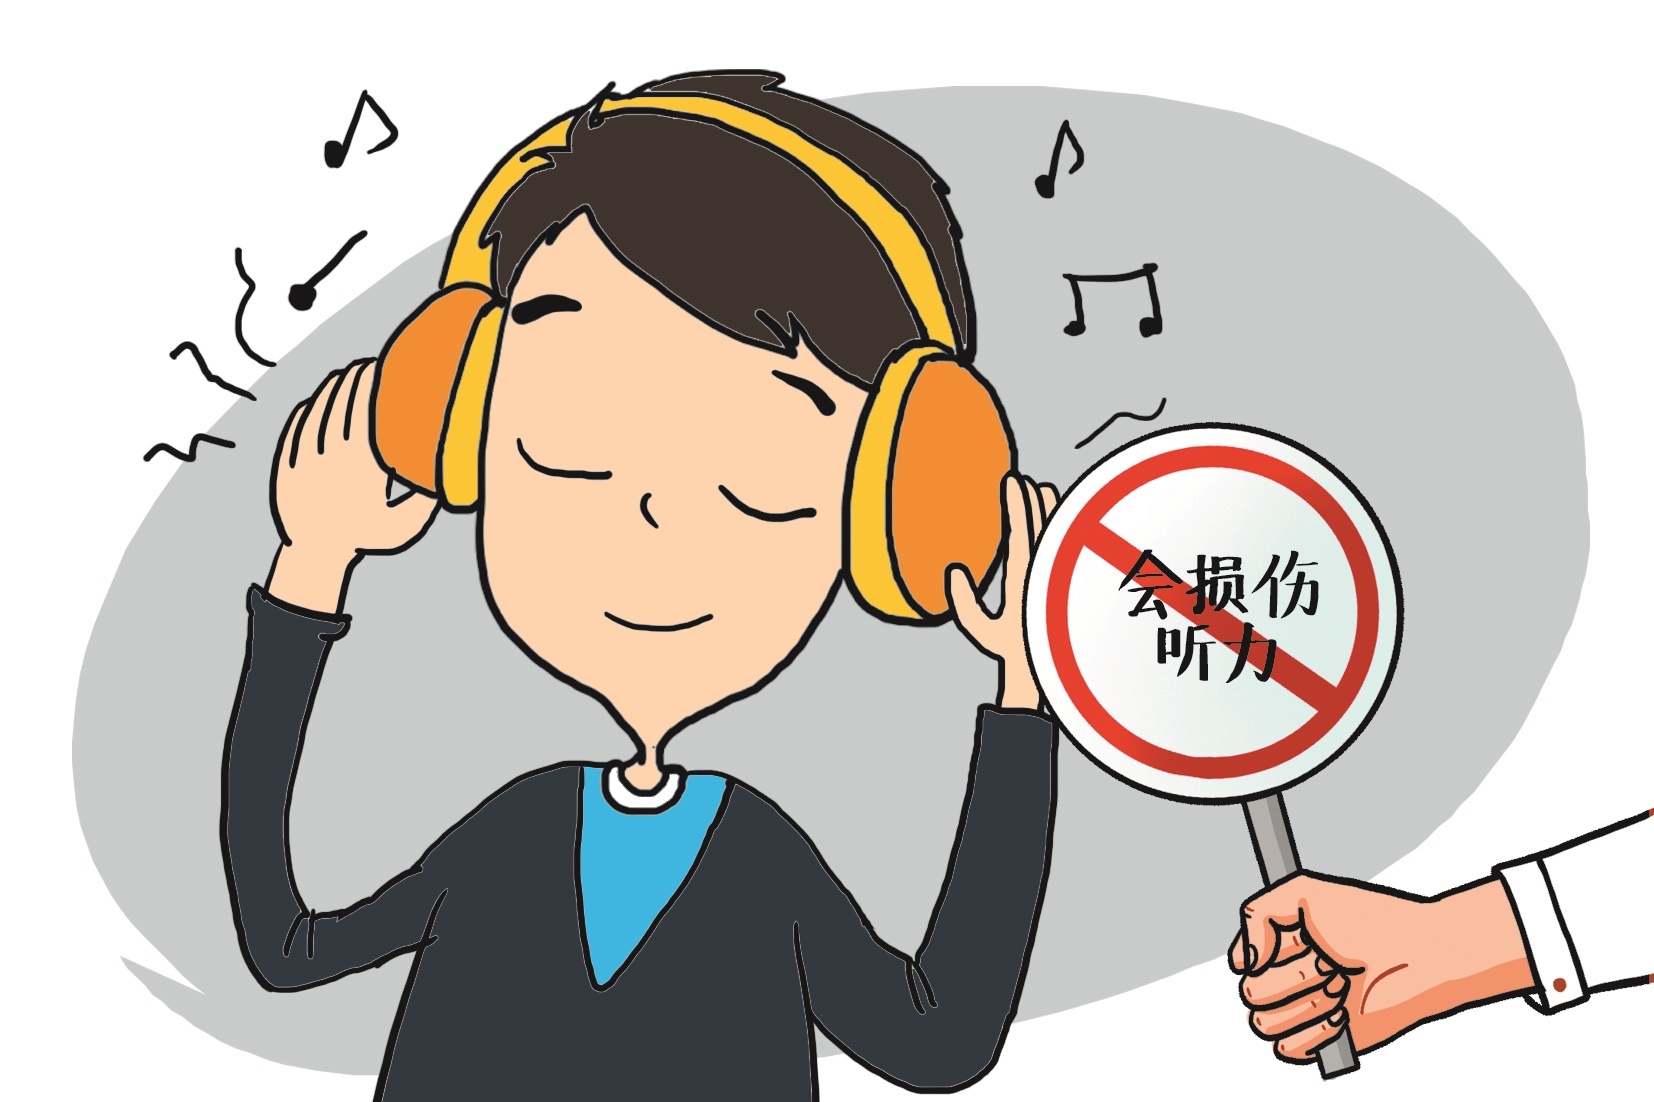 长期戴耳机听歌男子听力受损医生提醒连续使用耳机别超过60分钟